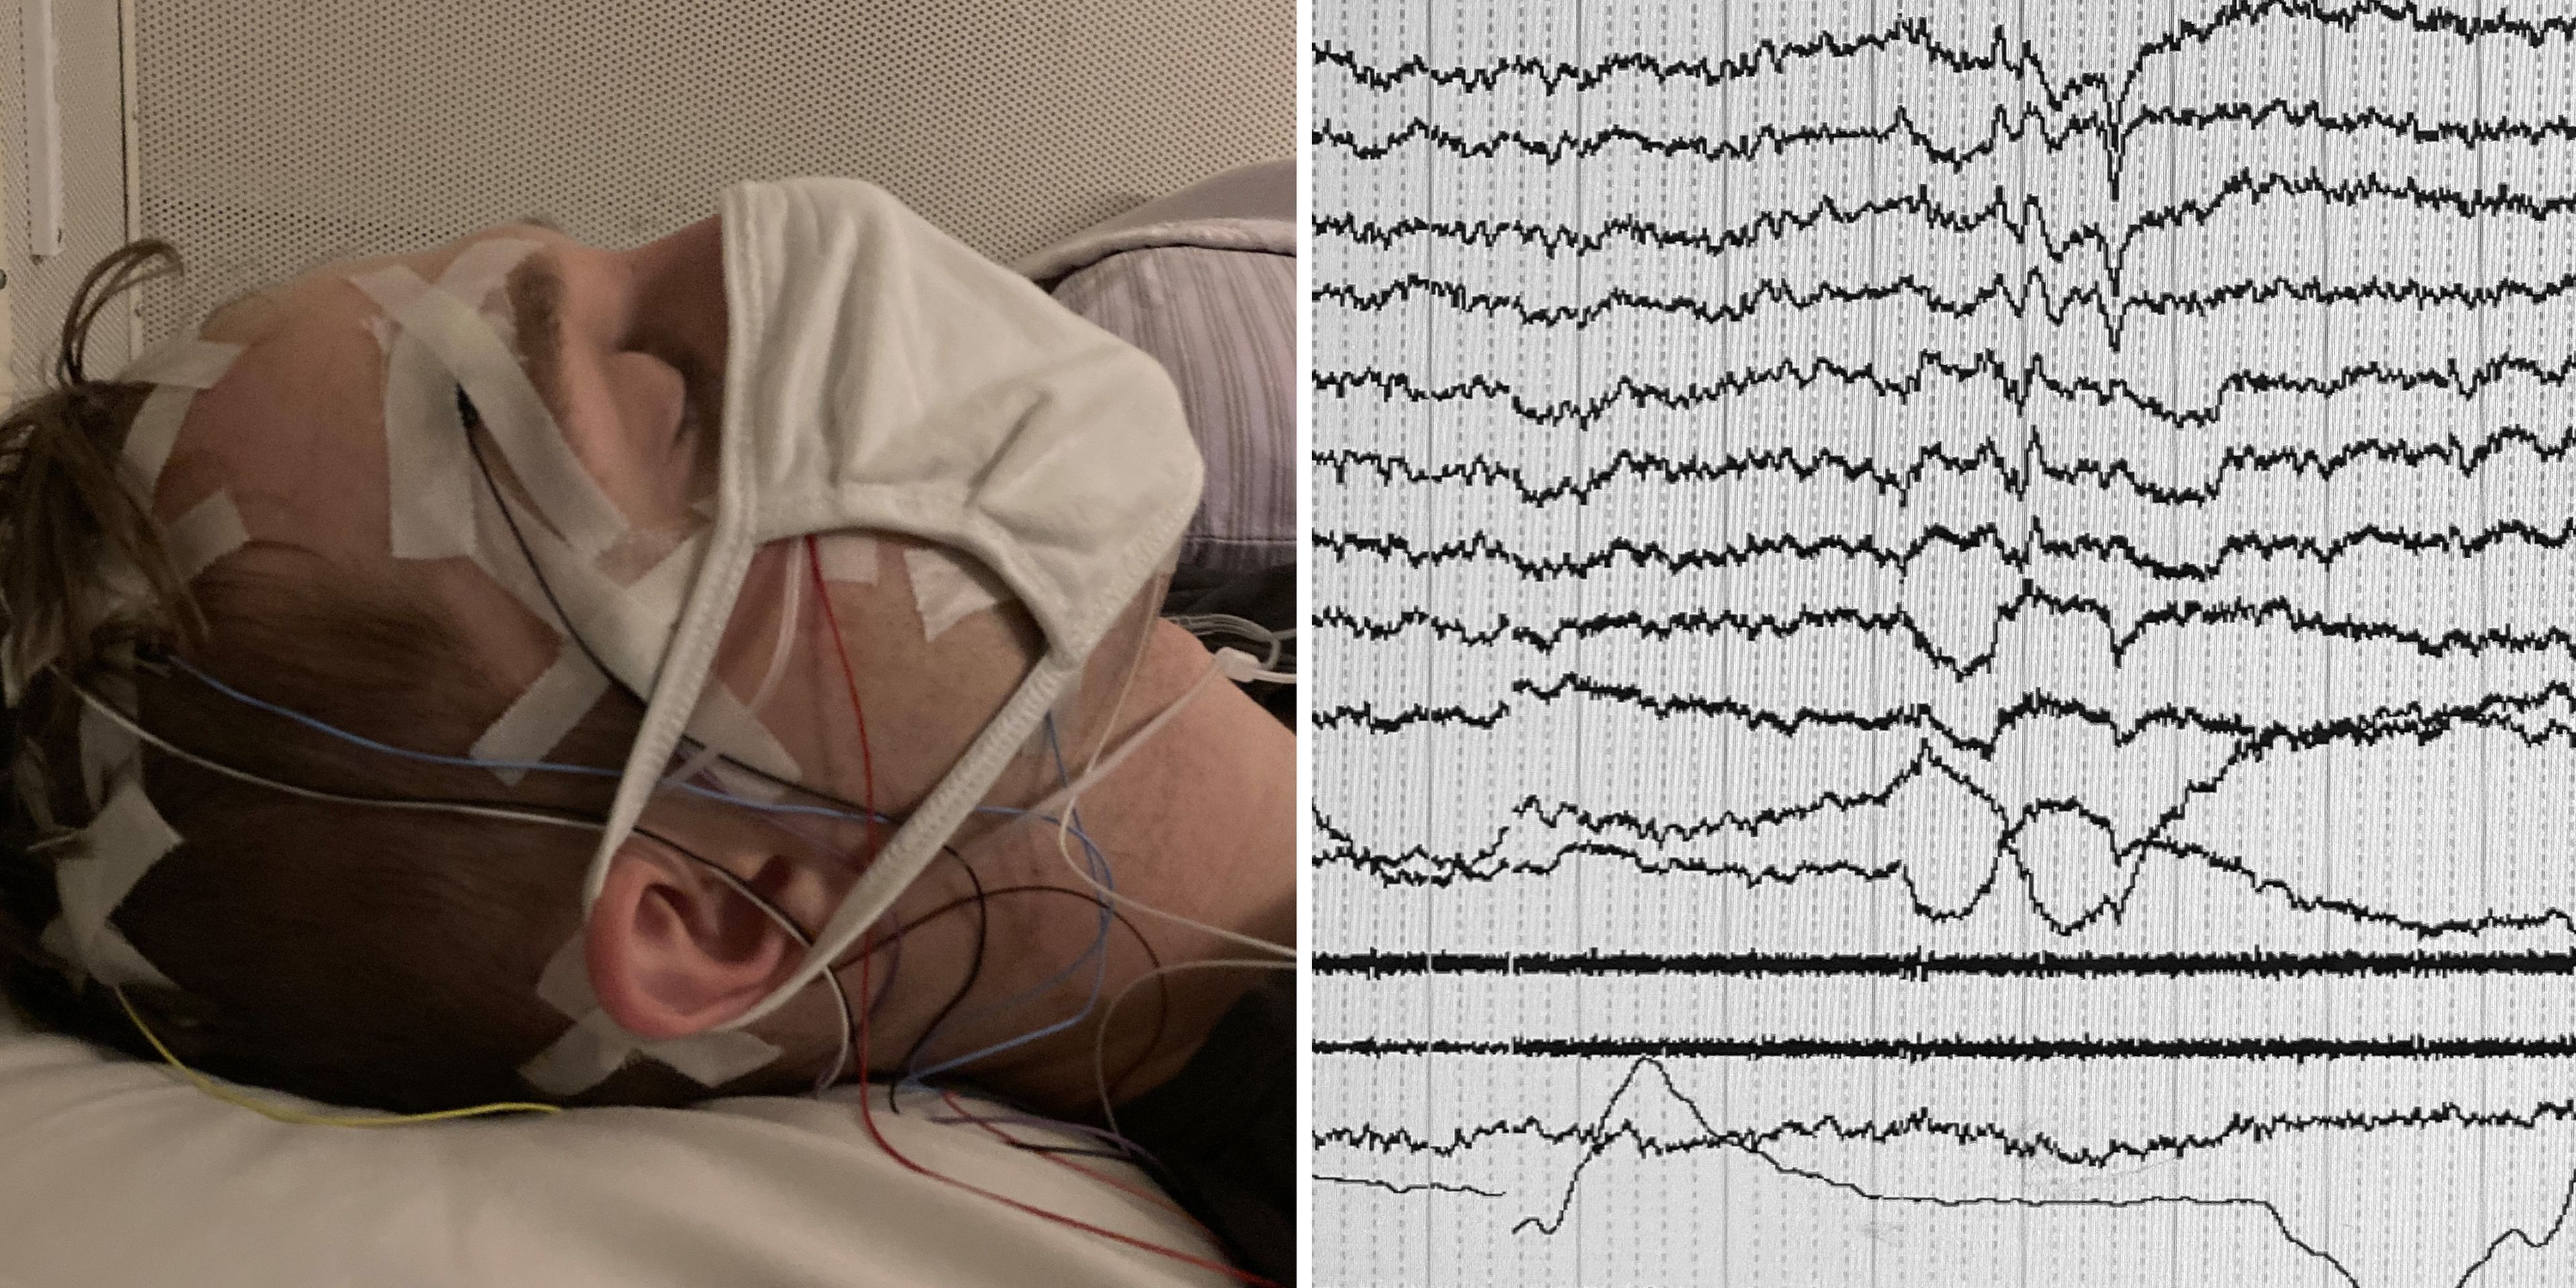 Imagen de uno de los pacientes (izquierda) y lo que quería comunicar (derecha).